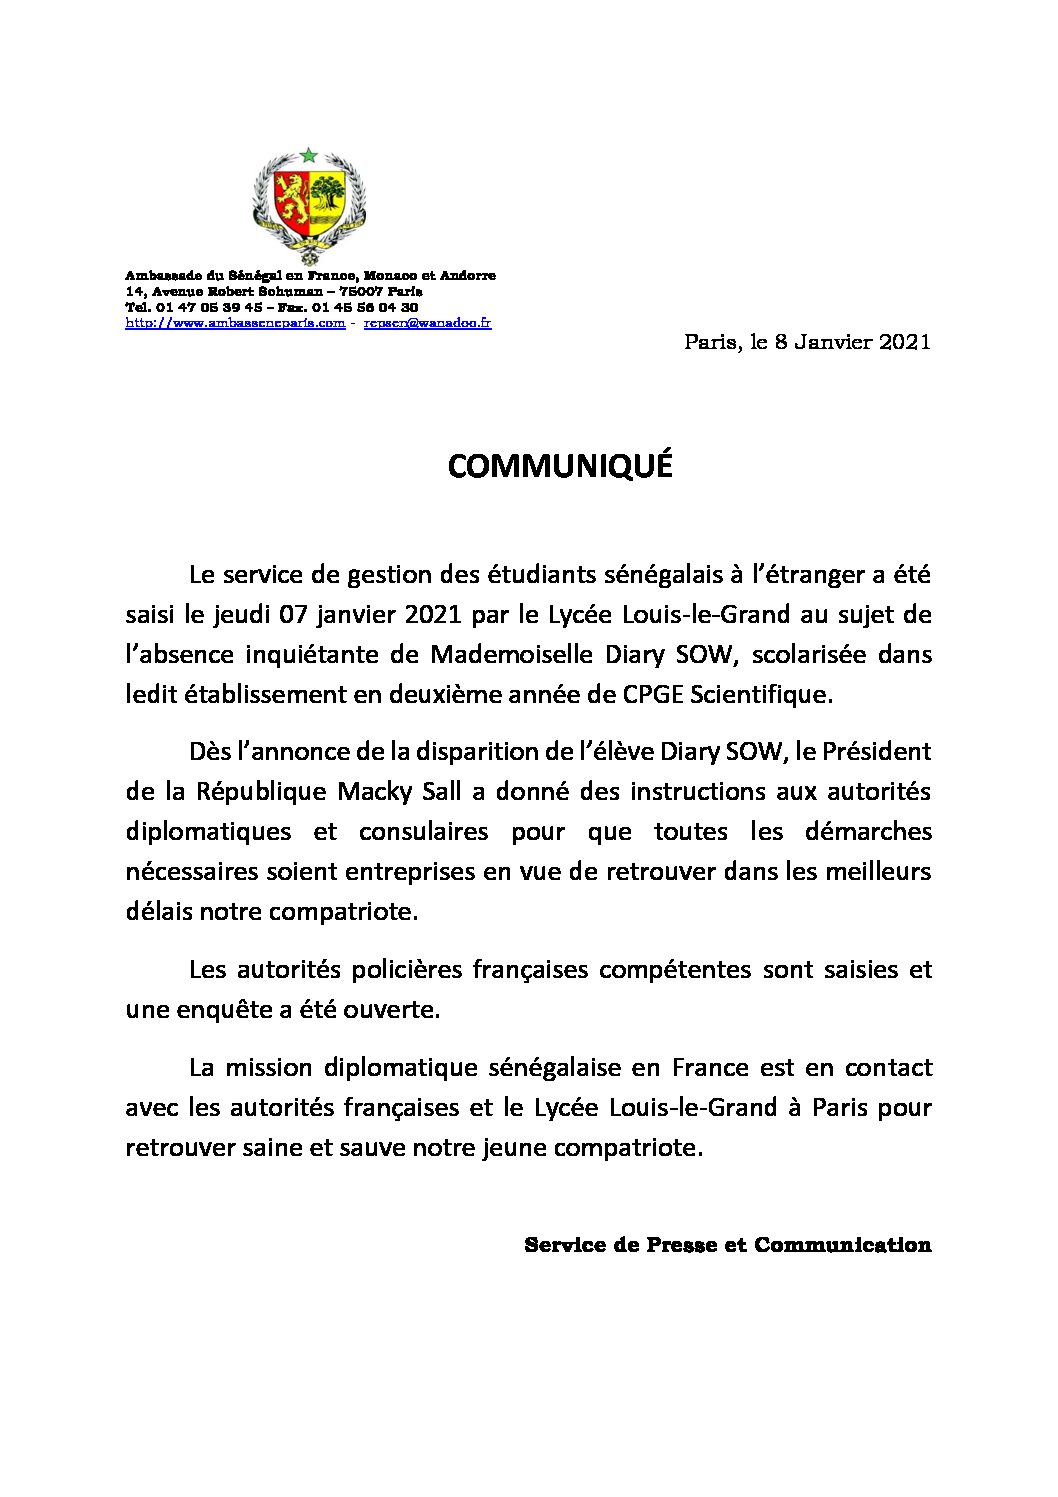 France- Disparition de Diary Sow: Voici le communiqué de l’ambassade du Sénégal à Paris